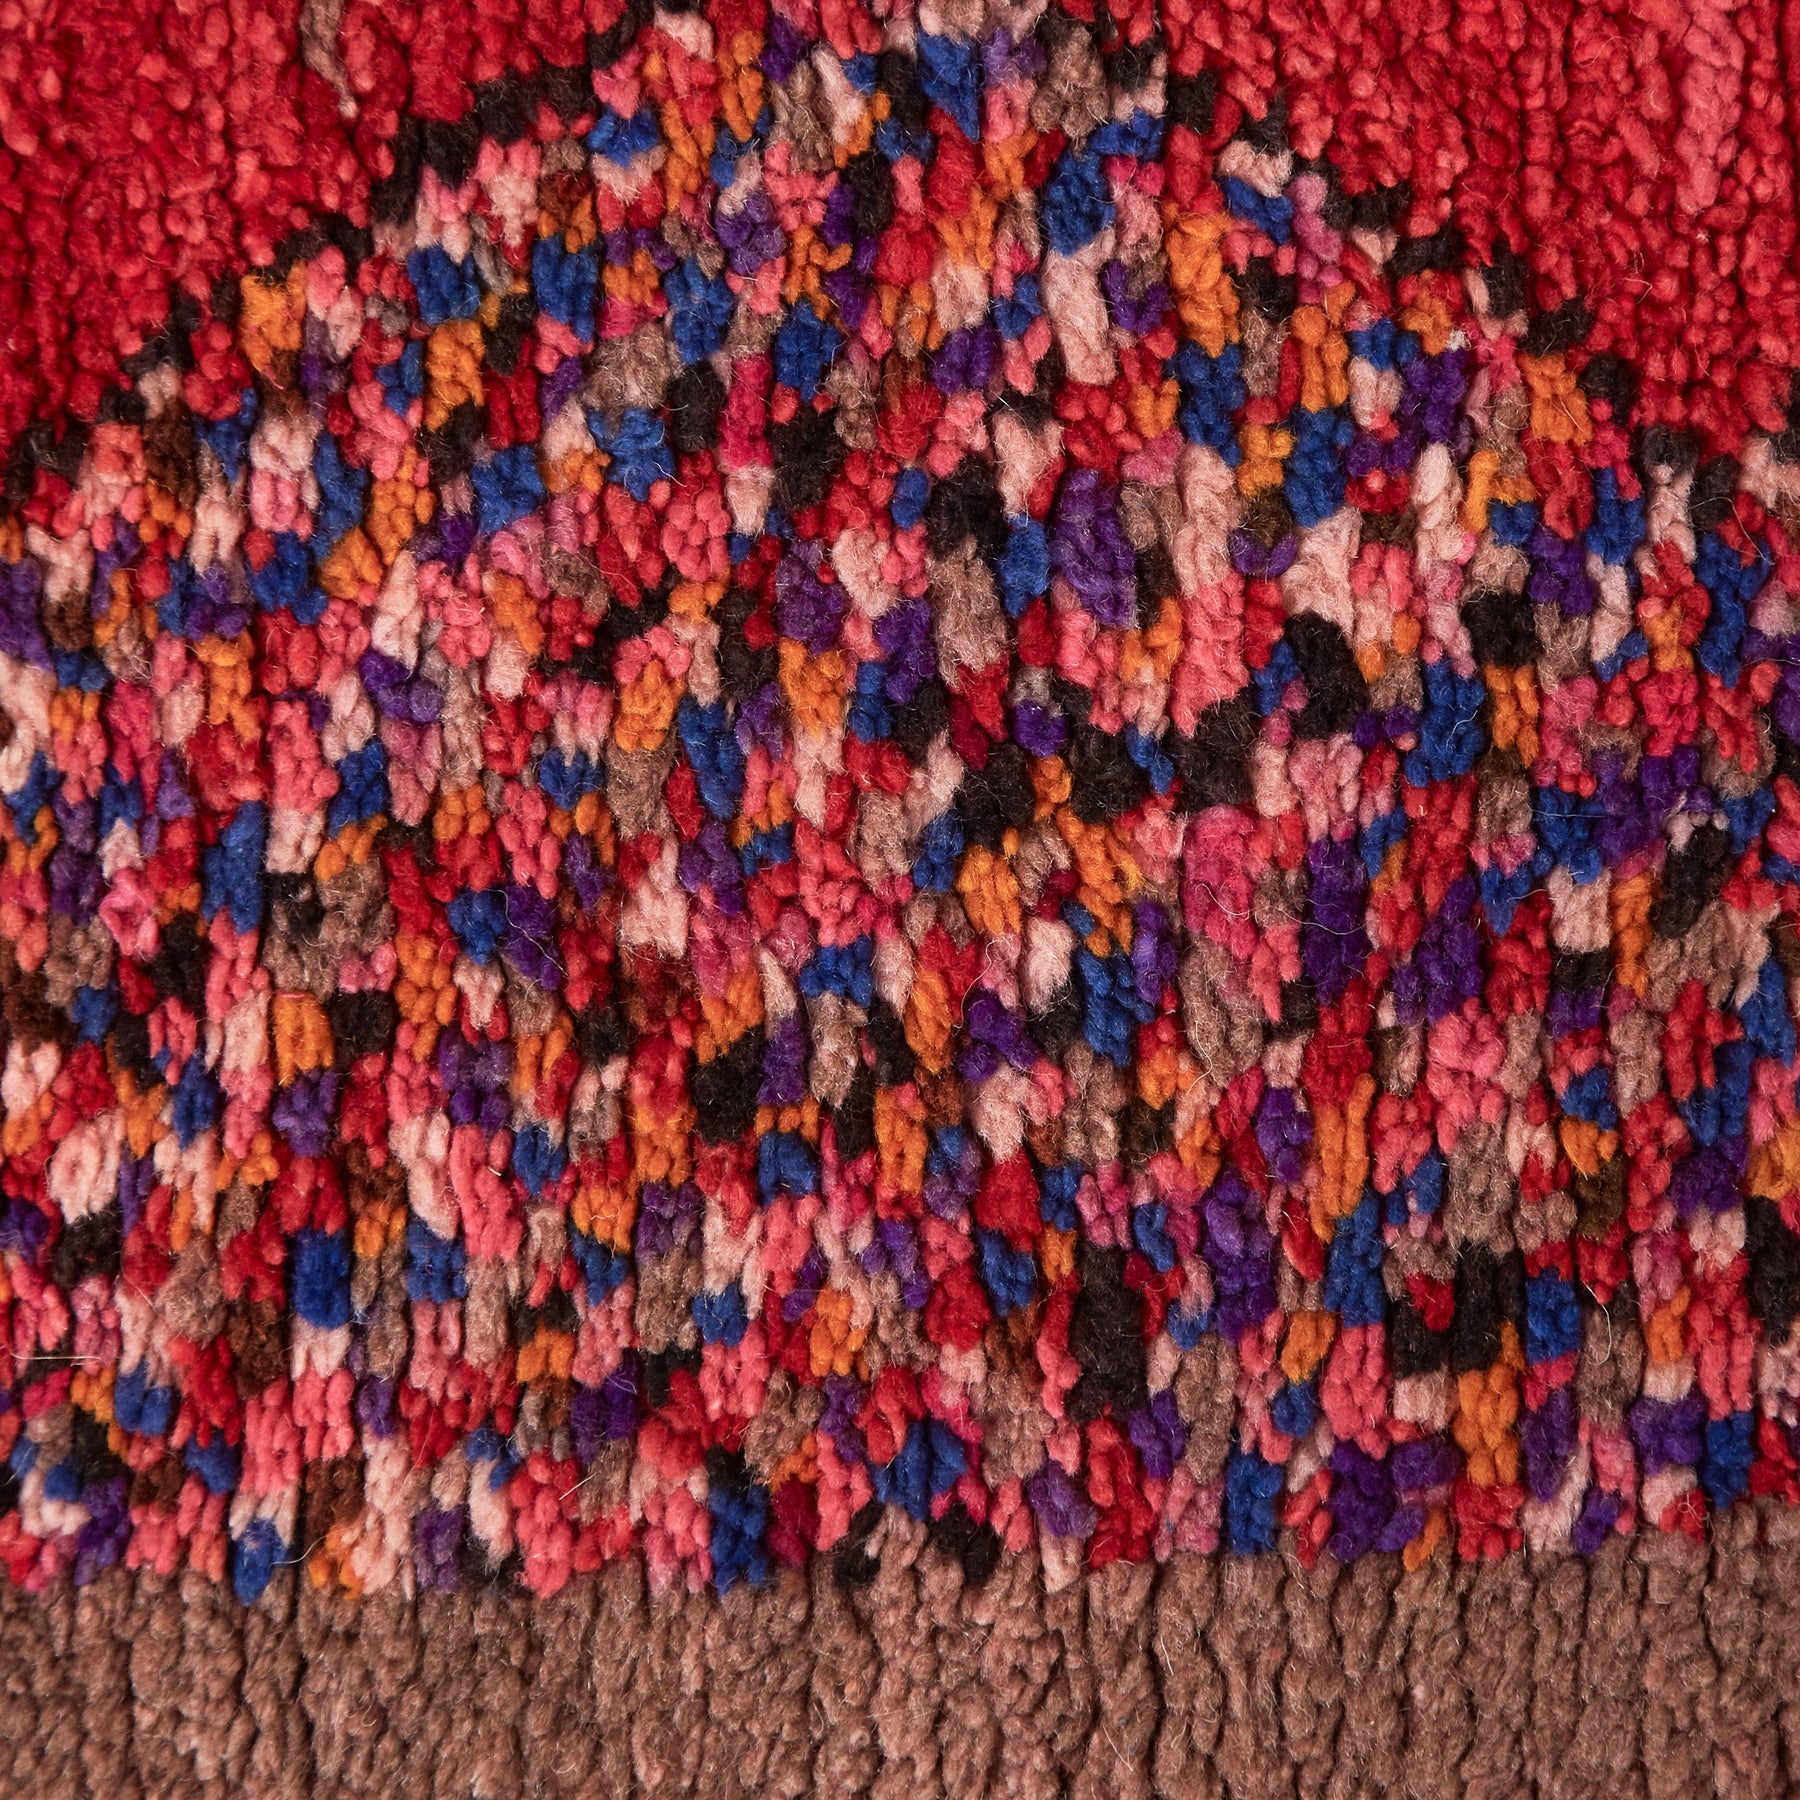 dettaglio della lana di diversi colore come sfumature di rosa rosso viola bianco arancione